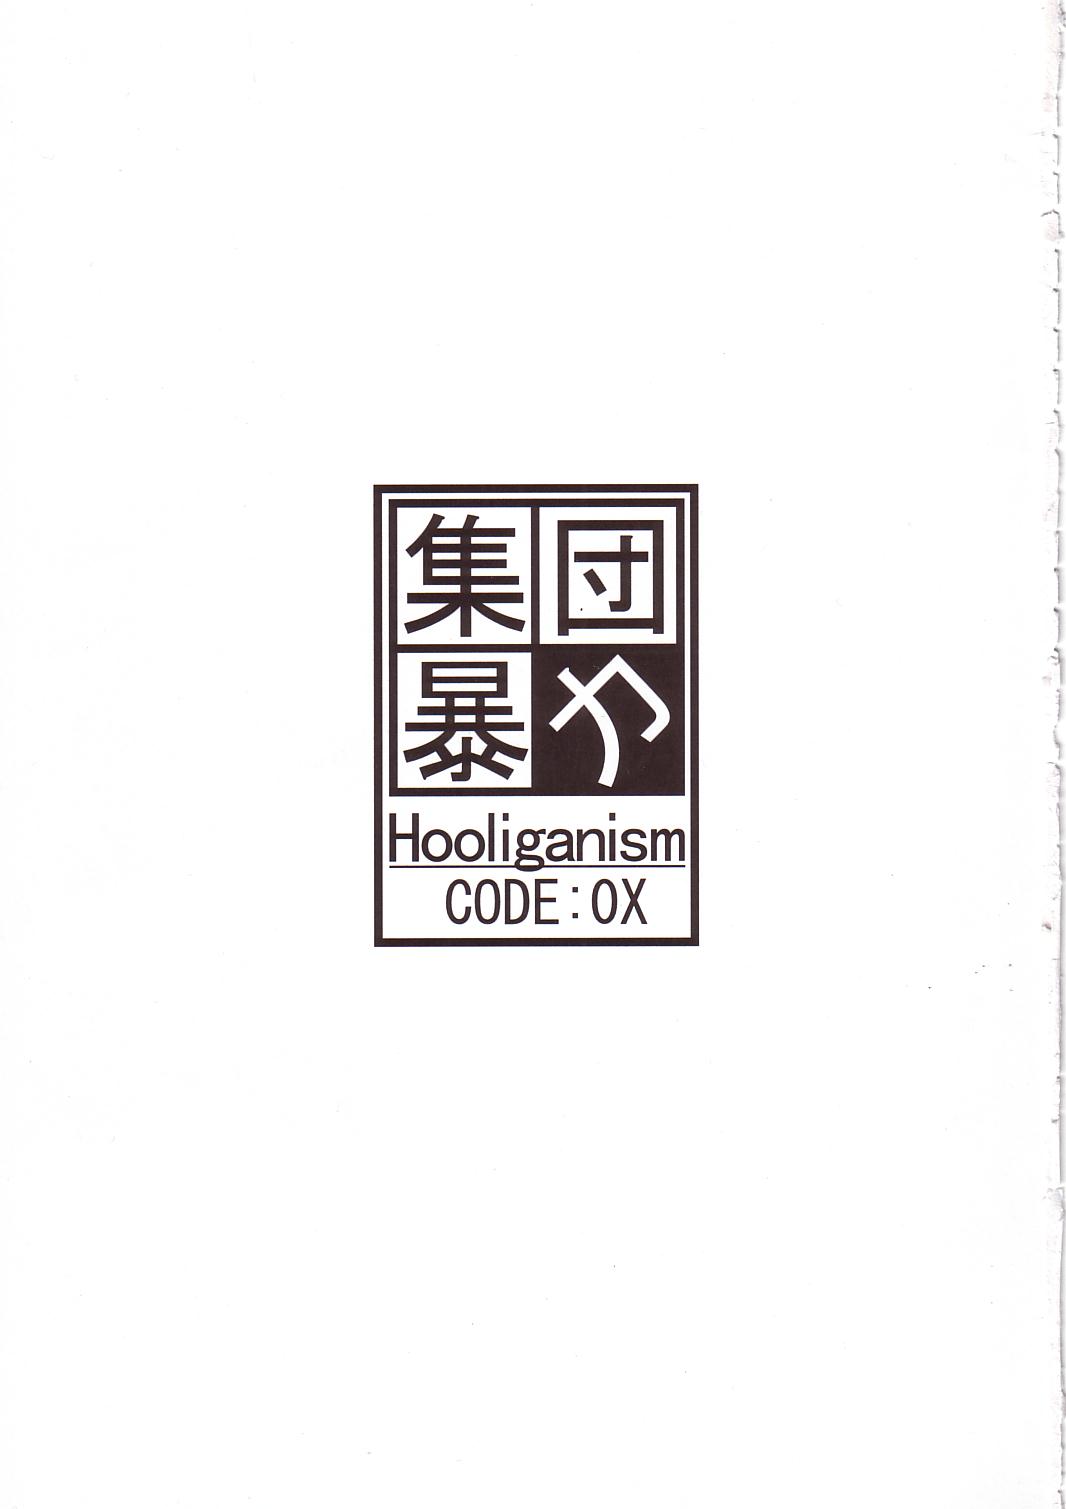 [Shuudan Bouryoku (Murasaki Shu)] CODE:OX (STRATOS4) [集団暴力 (むらさき朱)] CODE:OX (ストラトス・フォー)